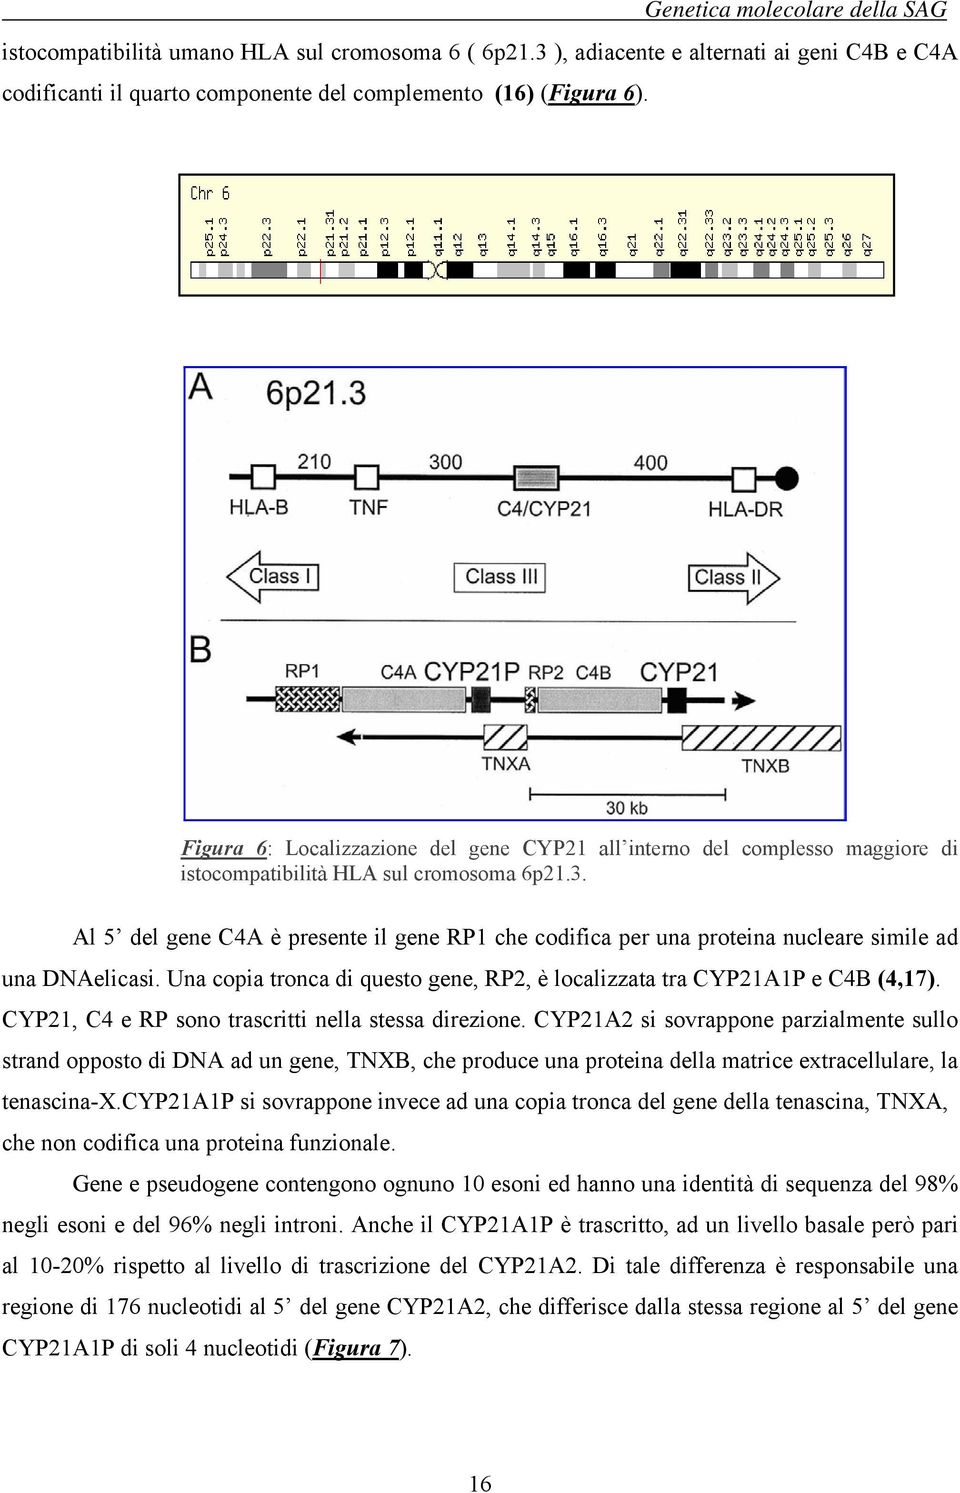 Al 5 del gene C4A è presente il gene RP1 che codifica per una proteina nucleare simile ad una DNAelicasi. Una copia tronca di questo gene, RP2, è localizzata tra CYP21A1P e C4B (4,17).